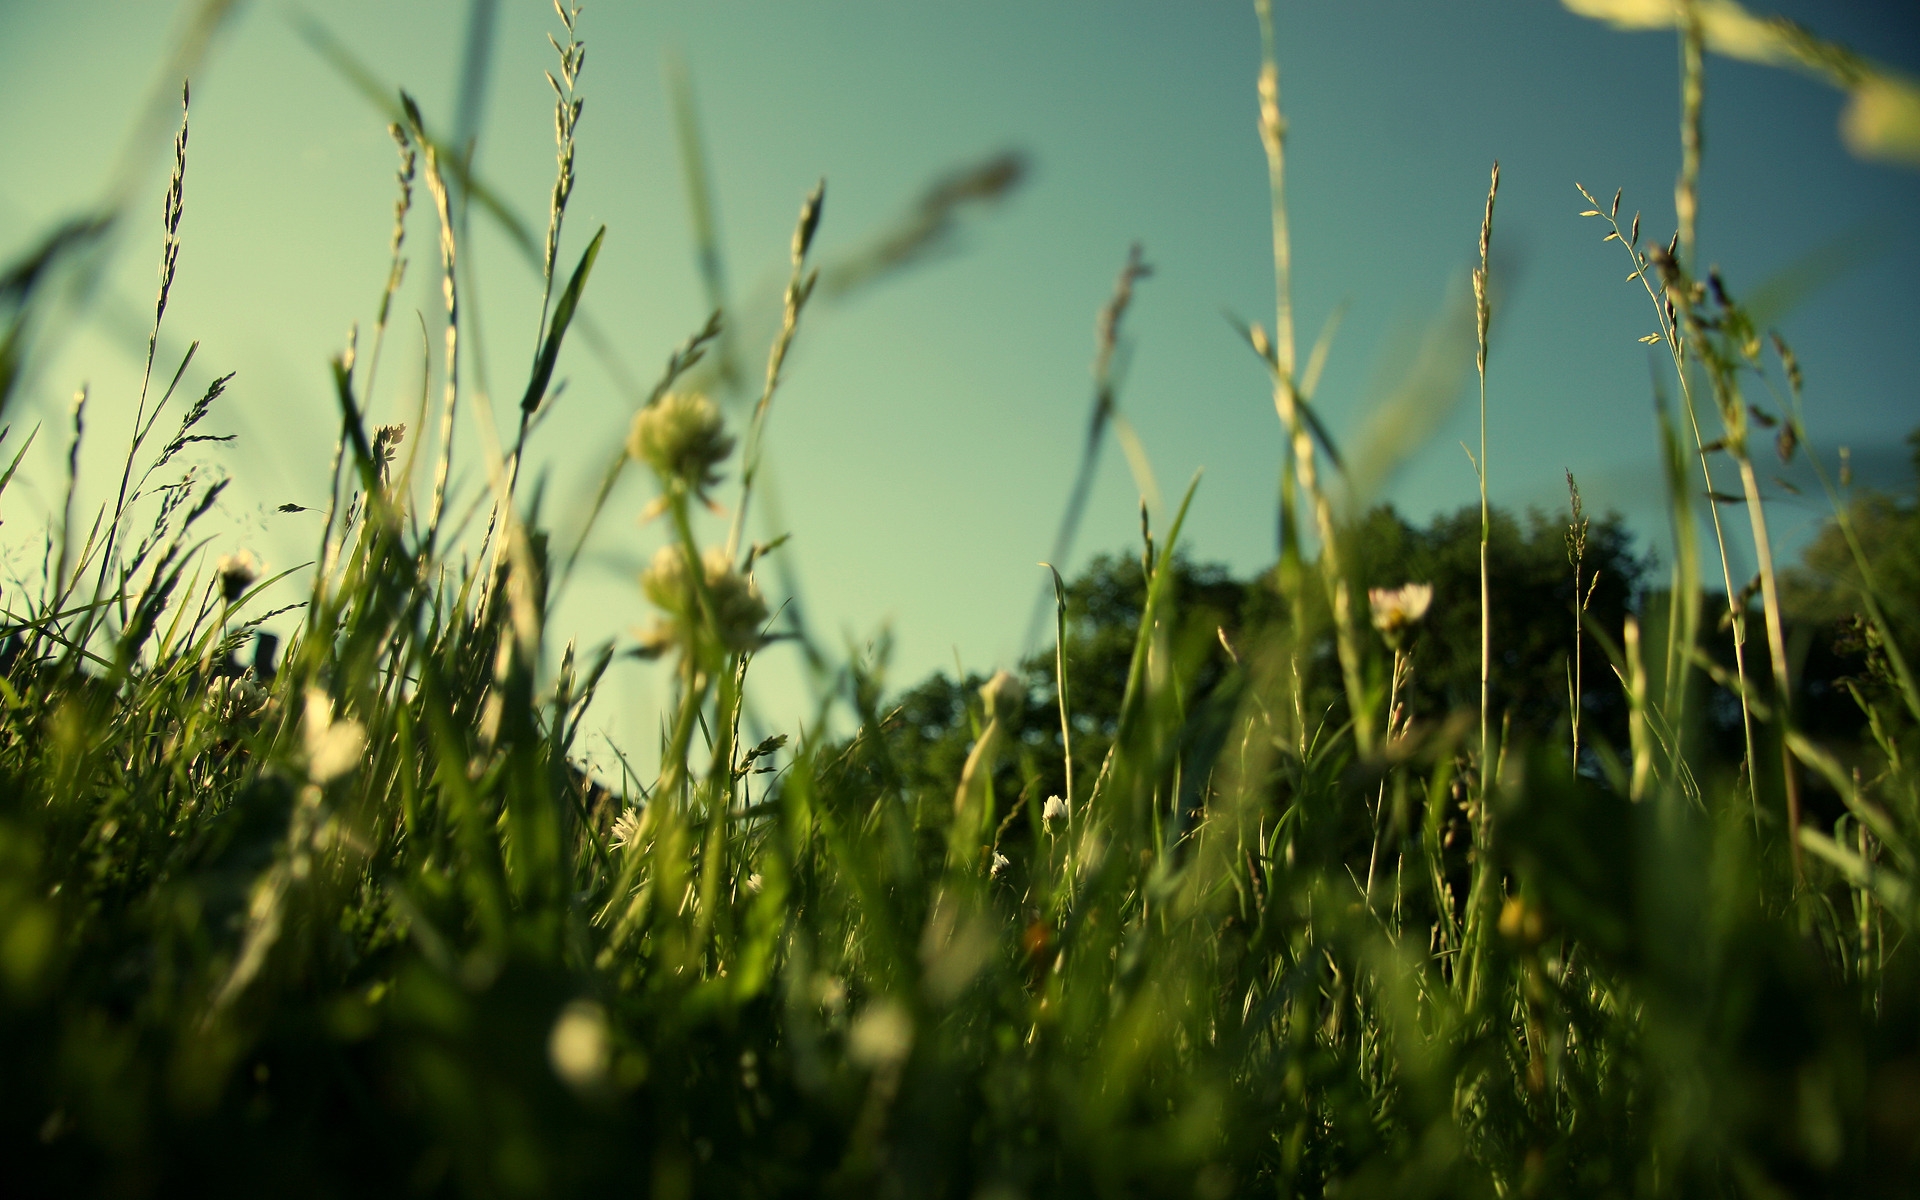 Evening Grass for 1920 x 1200 widescreen resolution